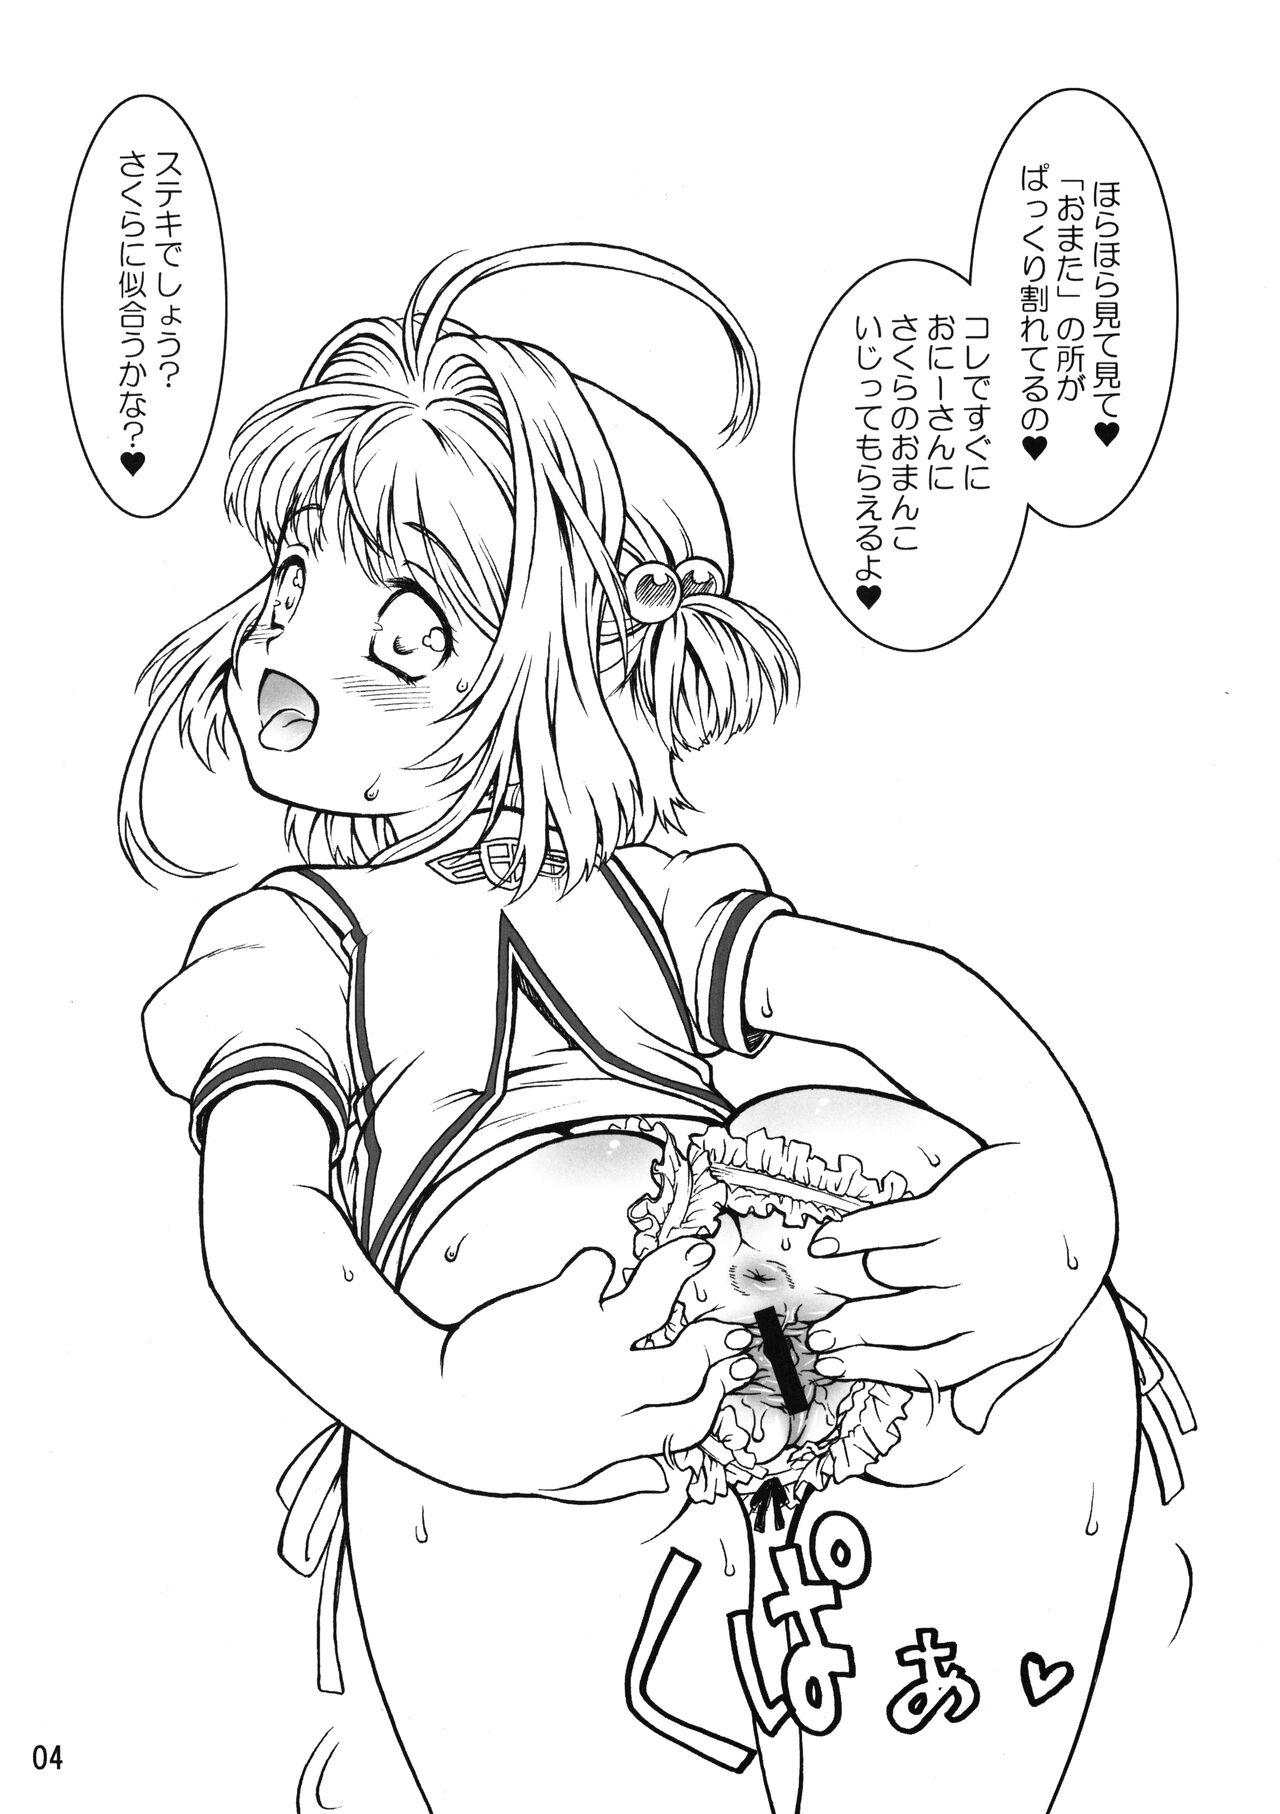 Passivo Mankai Sakura - Cardcaptor sakura Peluda - Page 4